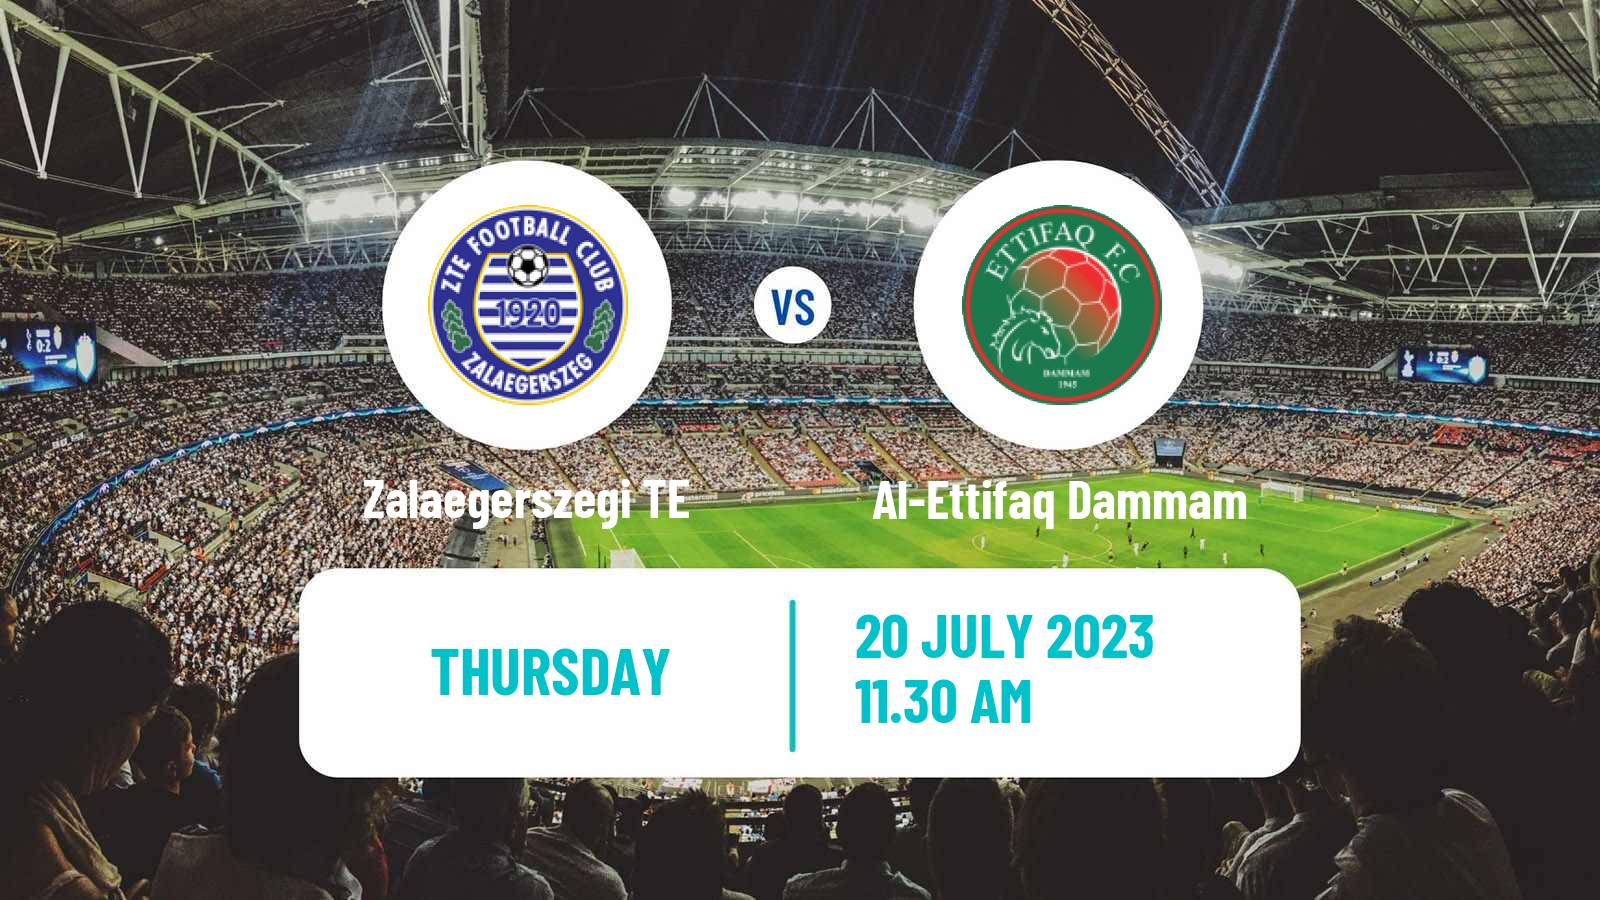 Soccer Club Friendly Zalaegerszegi TE - Al-Ettifaq Dammam